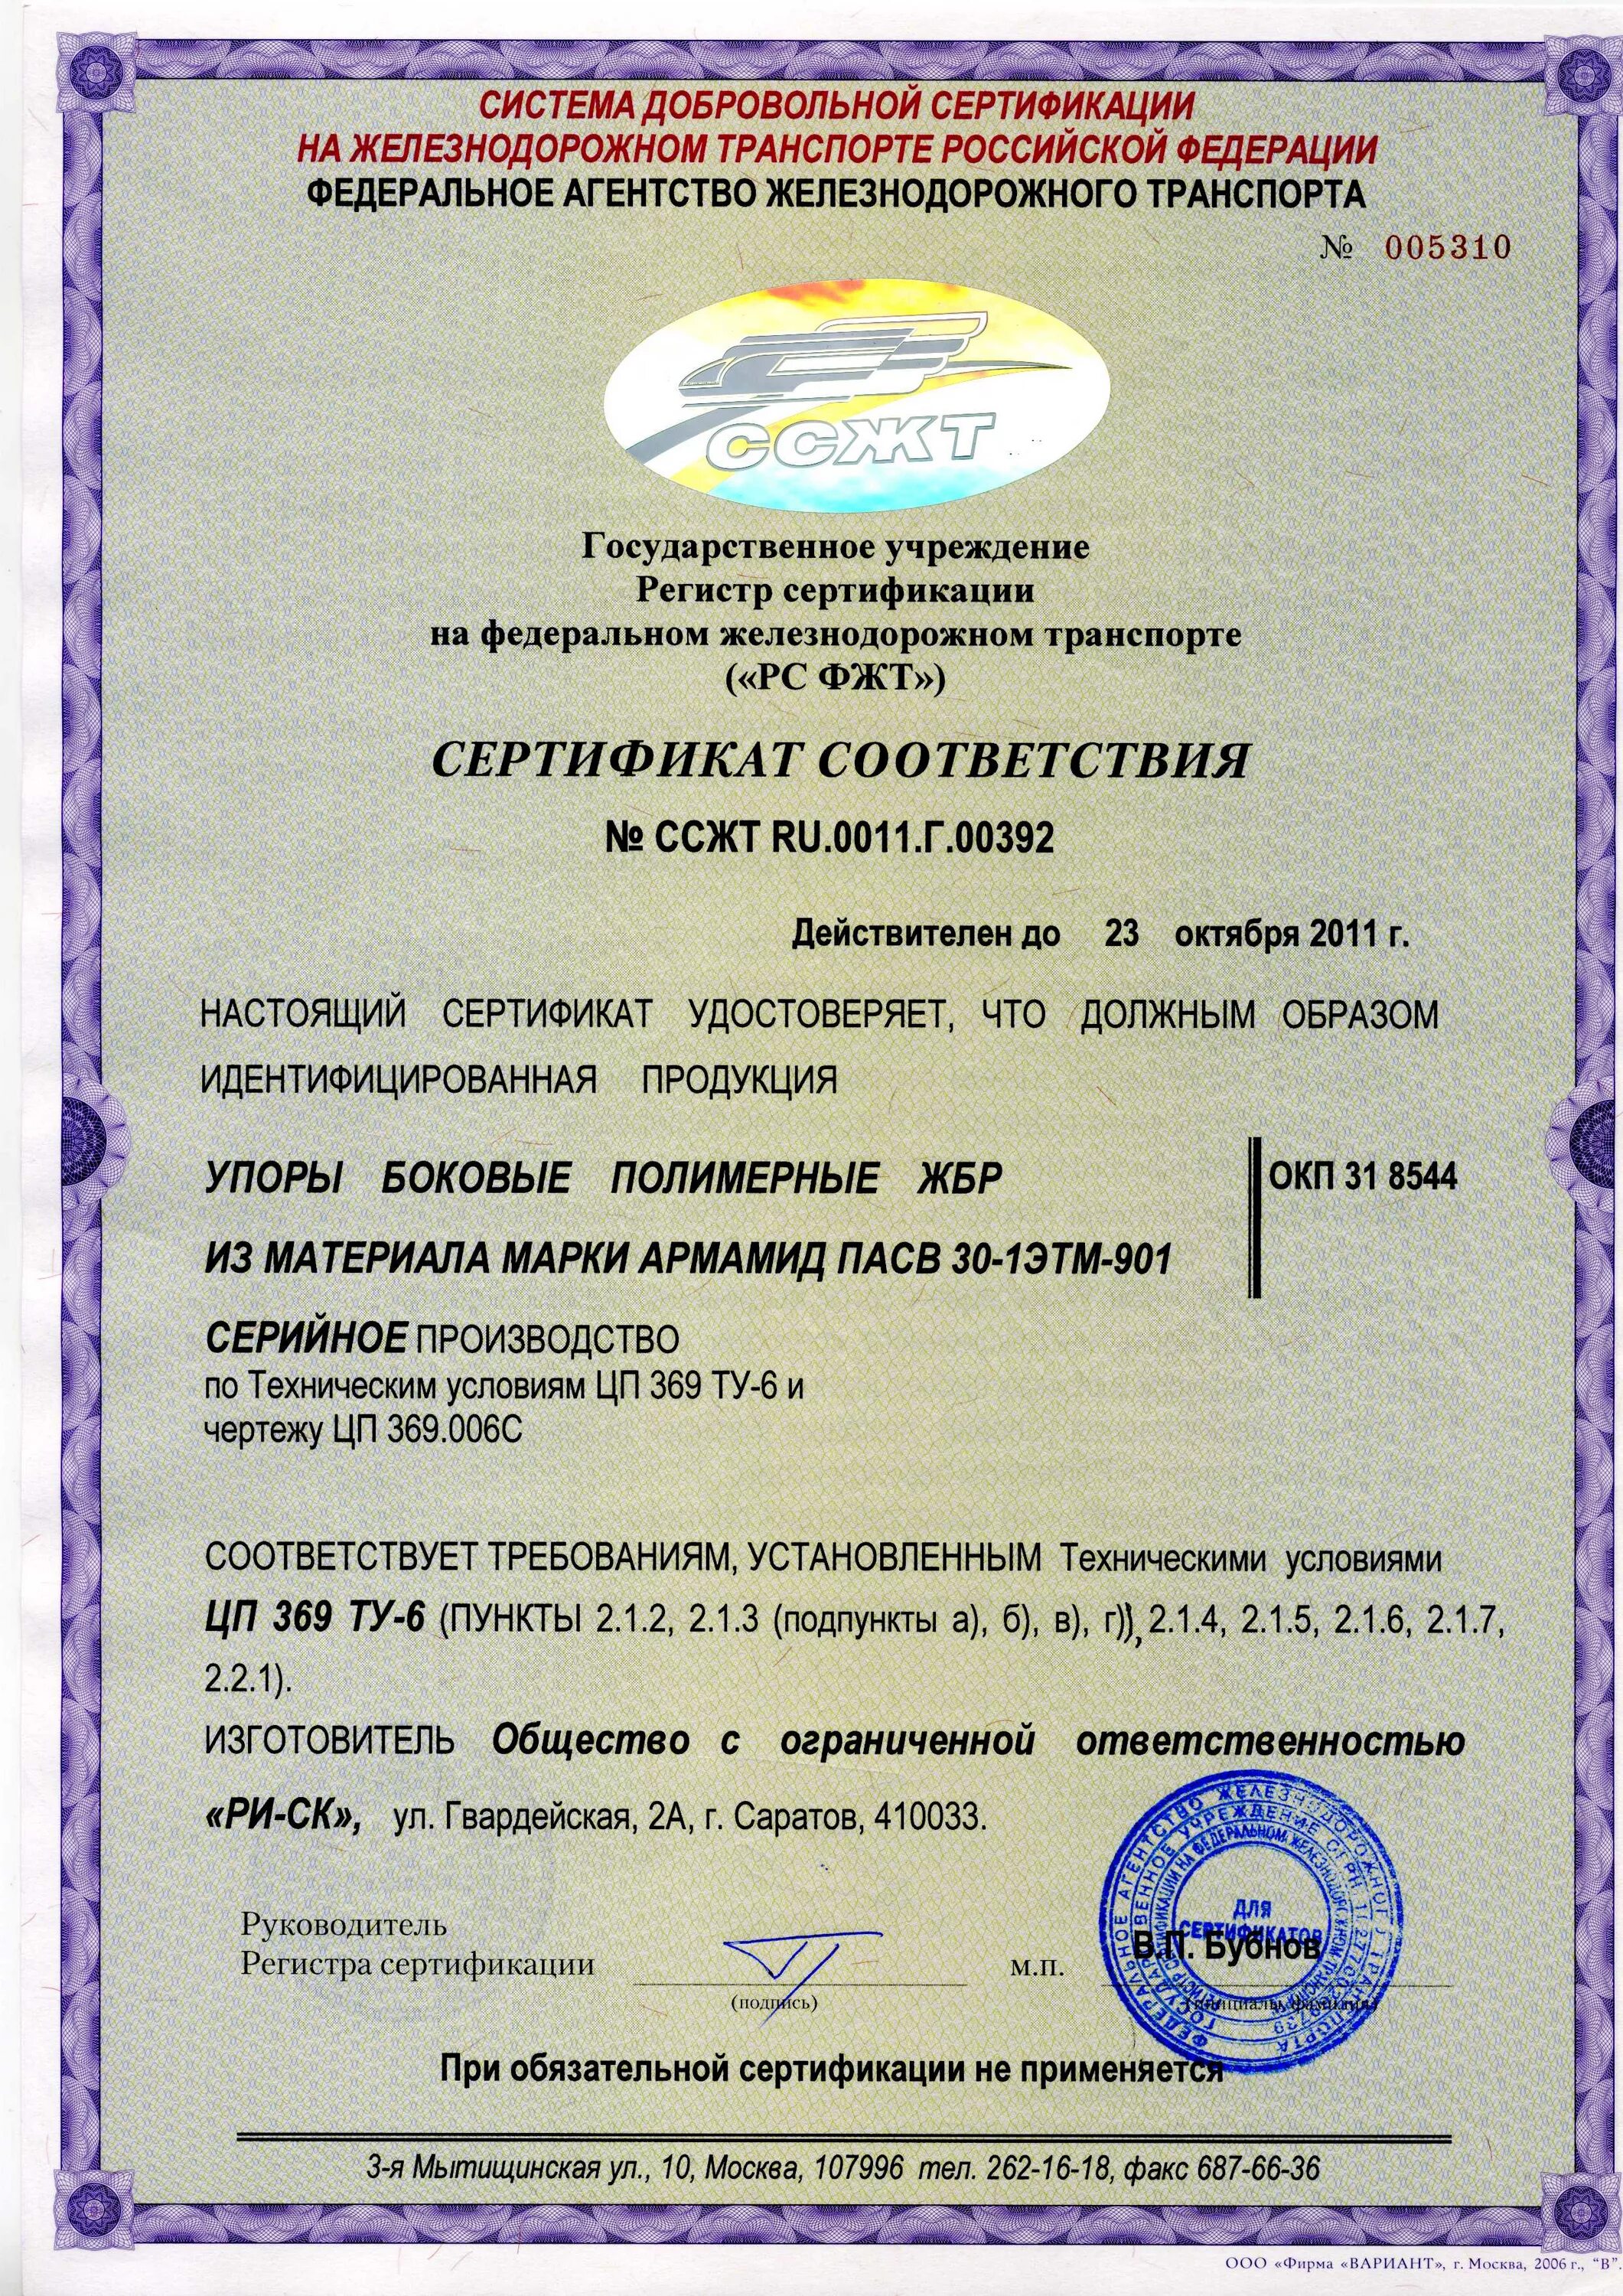 Сертификация на ЖД транспорте. Сертификаты соответствия на железнодорожного транспорта. Сертификат железнодорожного транспорта. Система сертификации на Железнодорожном транспорте.